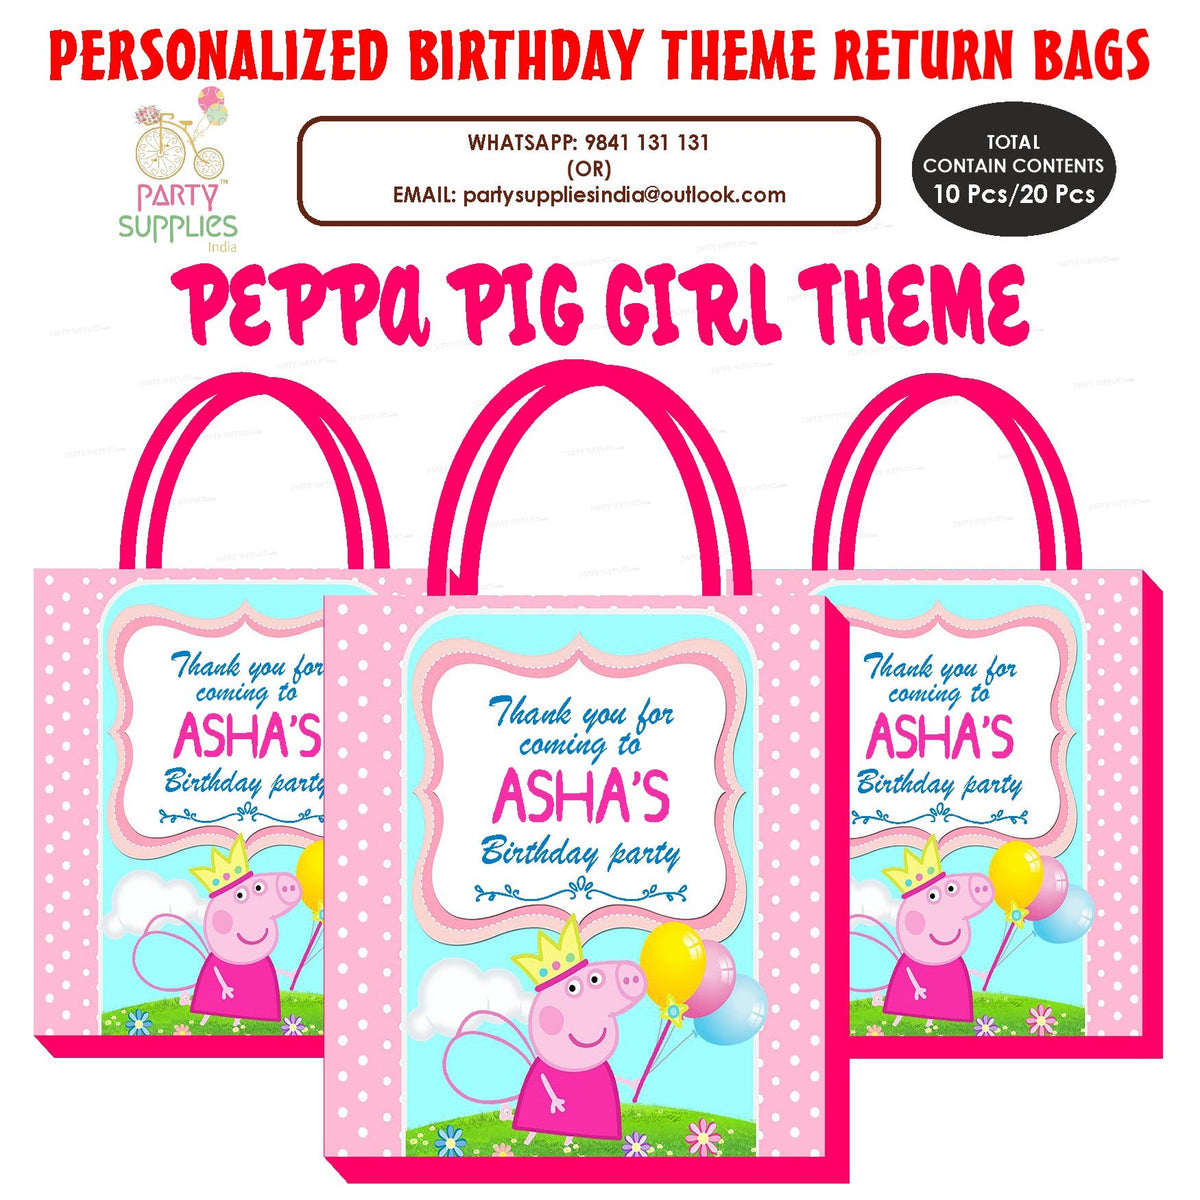 PSI Peppa Pig Girl Theme Return Gift Bag